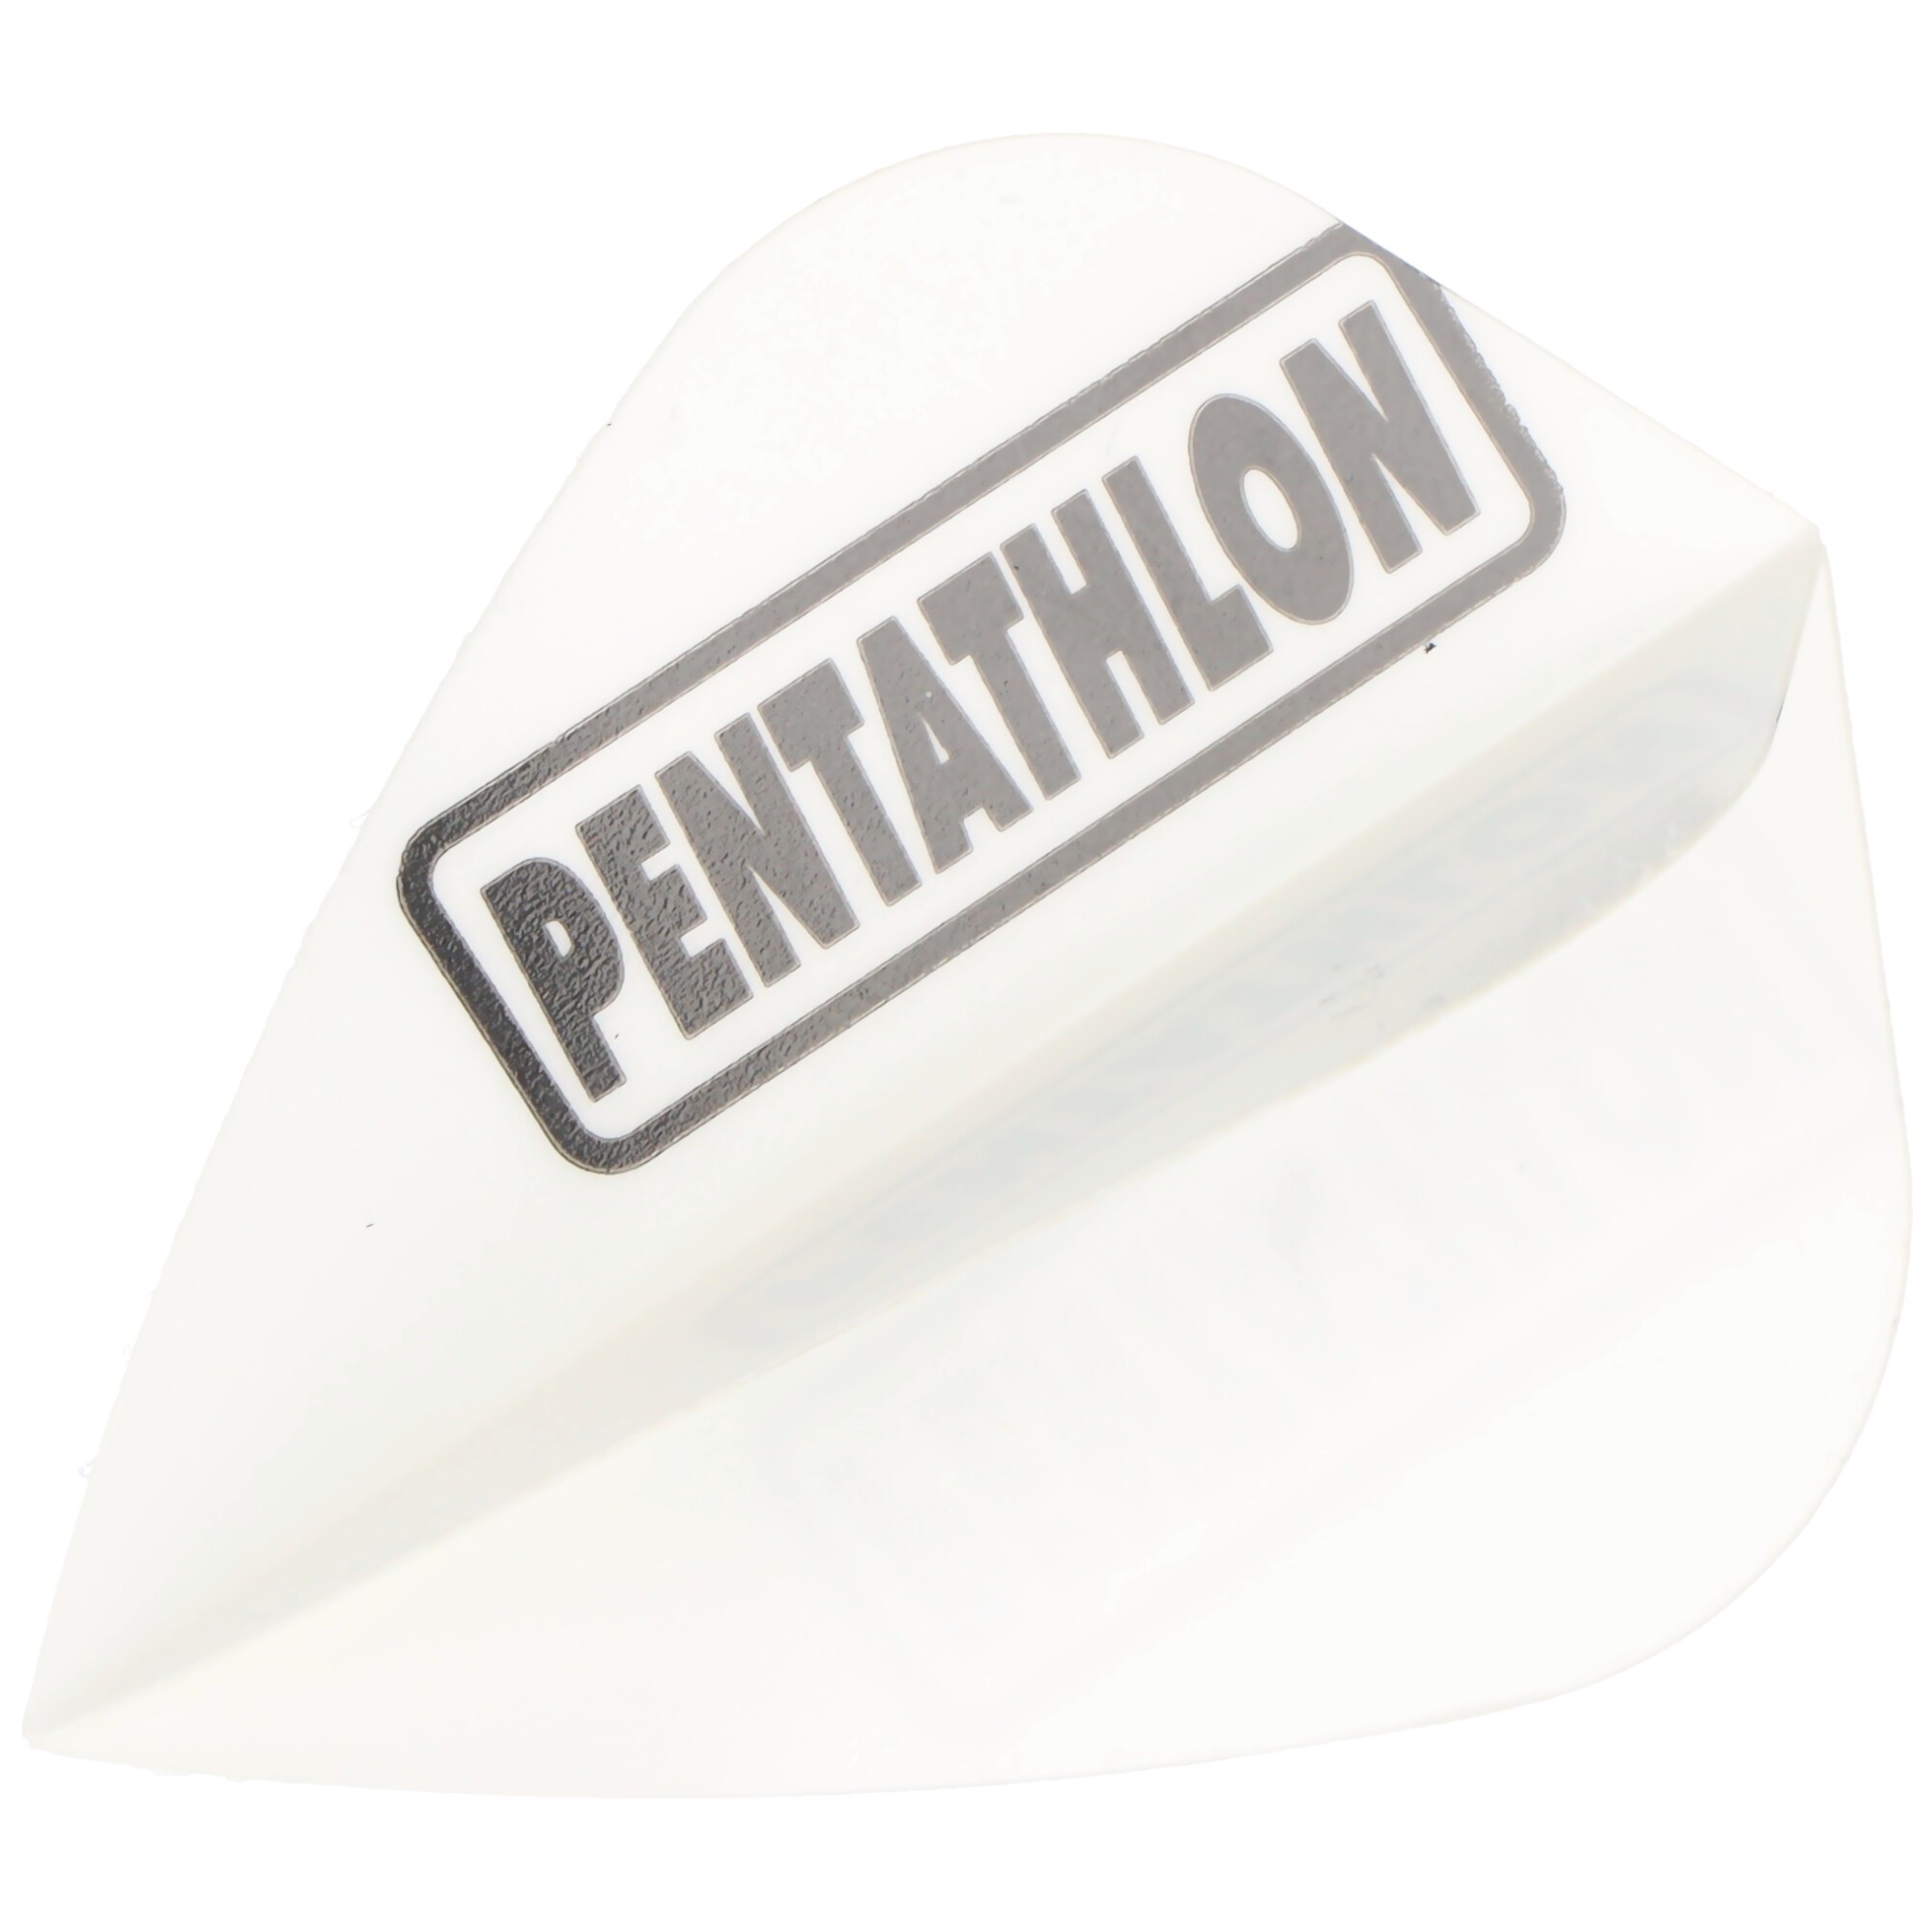 Pentathlon Dart Flight Kite Form